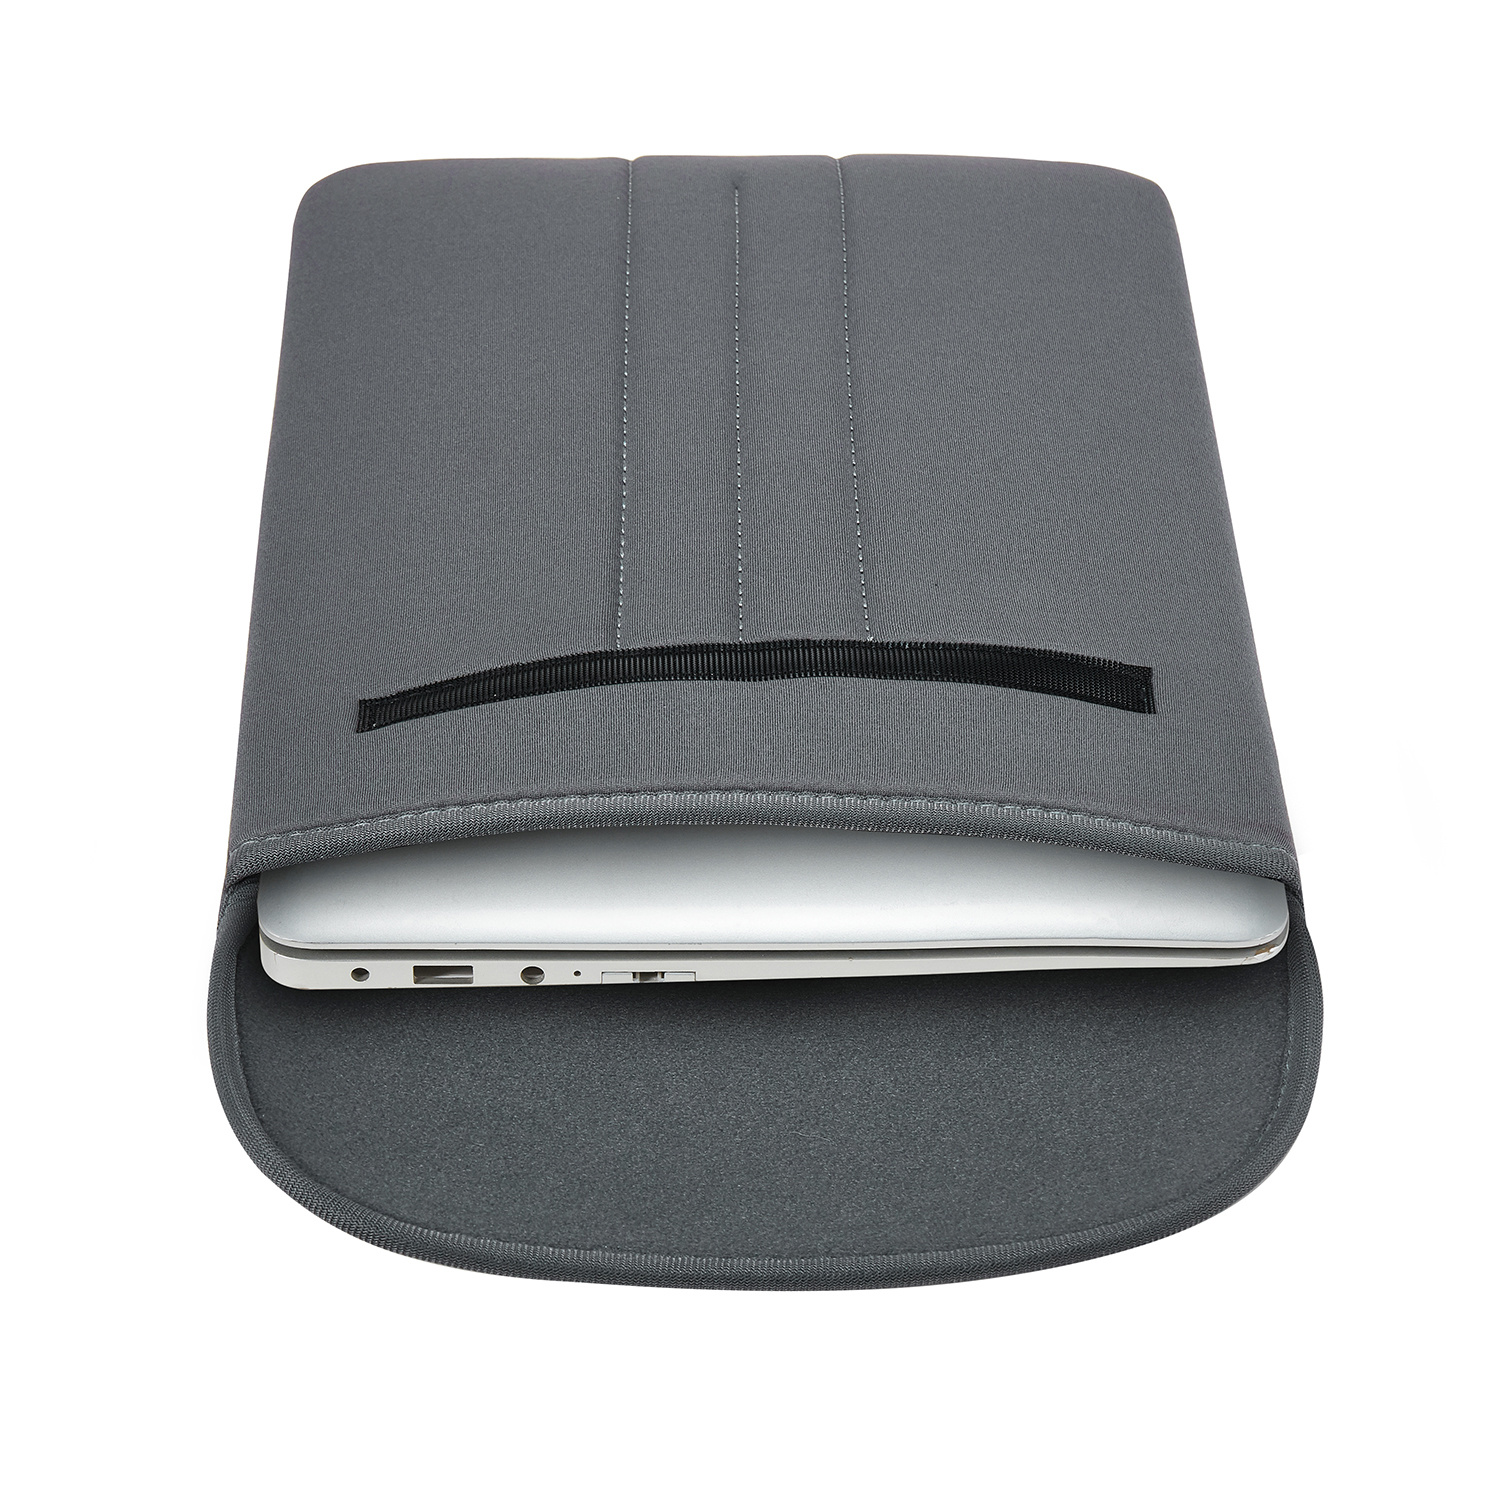 Case2go Laptop Sleeve - Laptophoes geschikt voor Macbook, Laptop en Chromebook - 16 inch / 17.3 inch Grijs | Case2go.nl